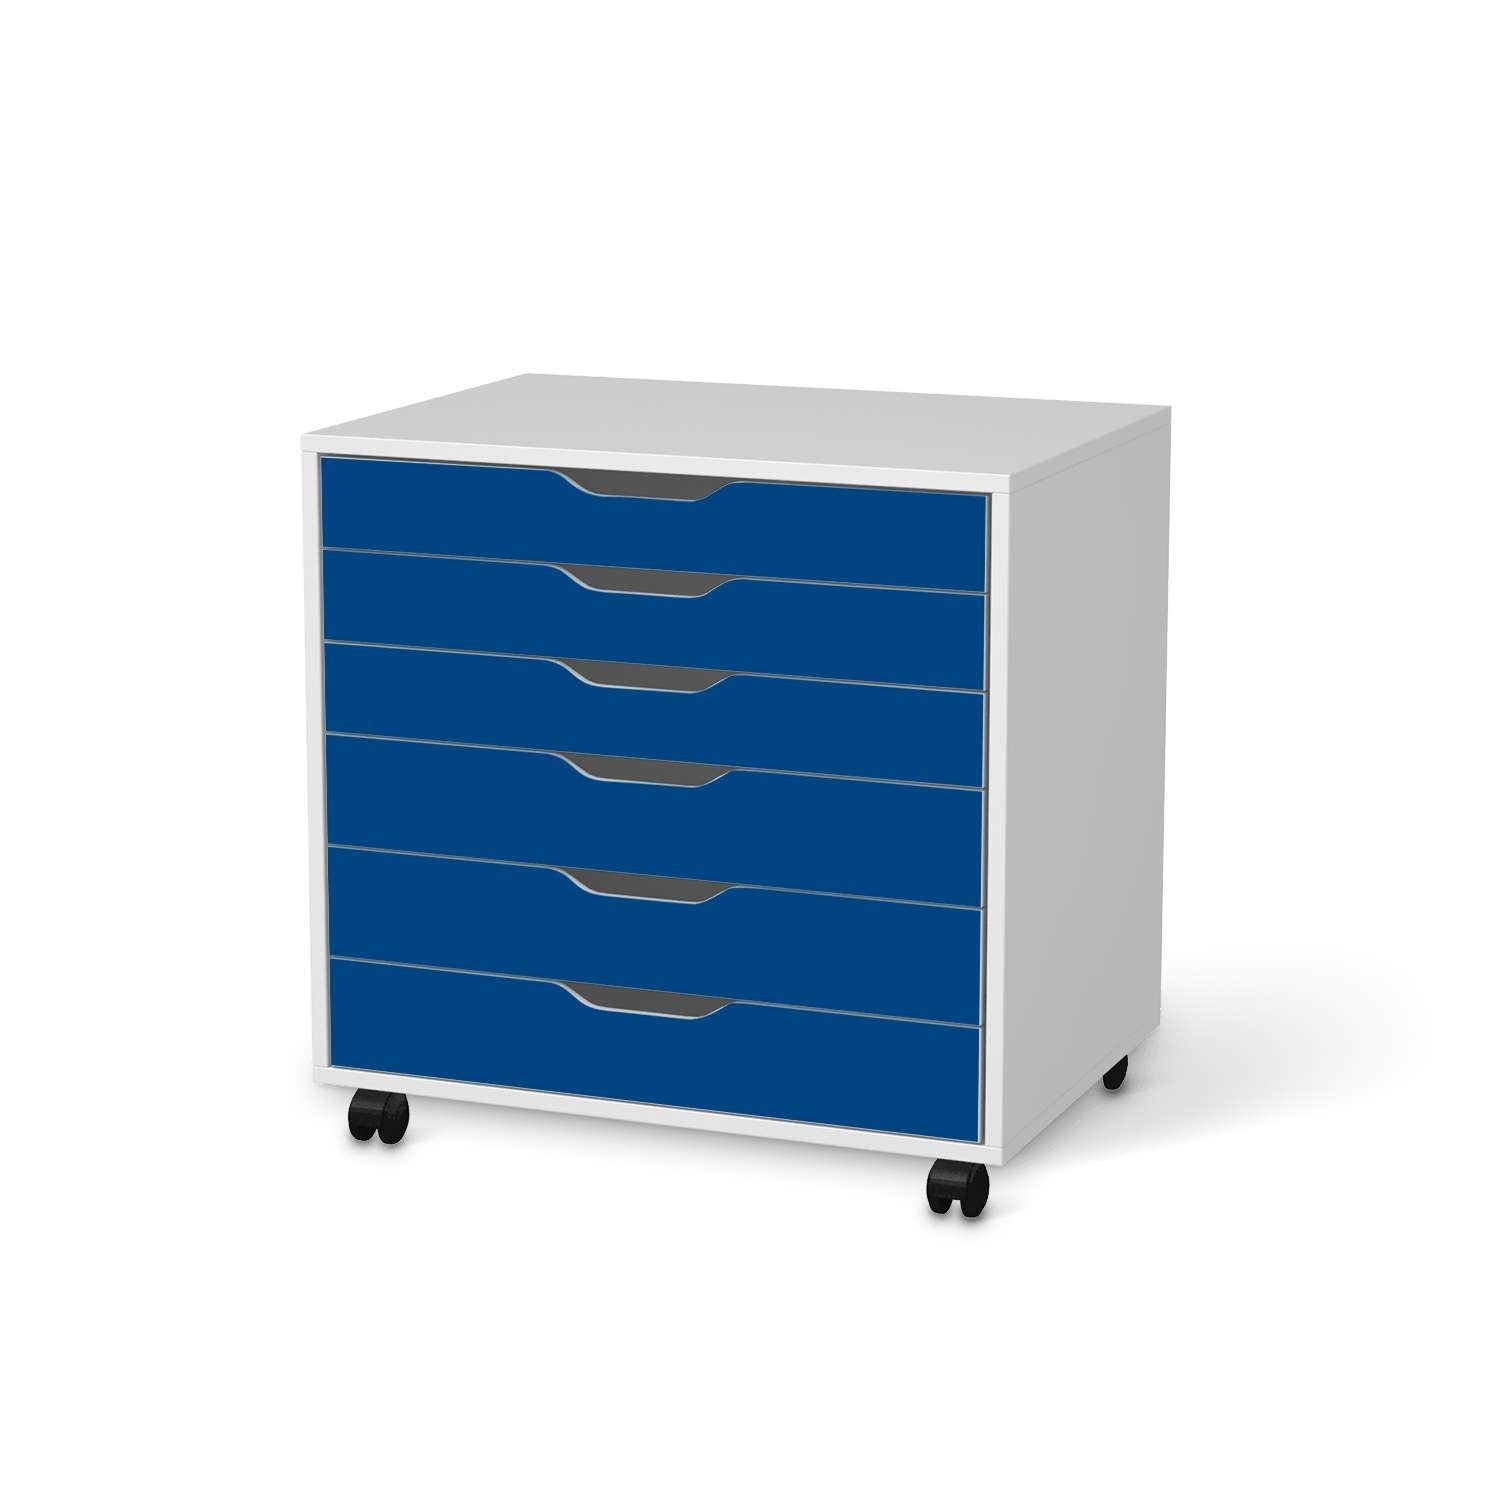 M?belfolie IKEA Alex Rollcontainer 6 Schubladen - Design: Blau Dark von creatisto